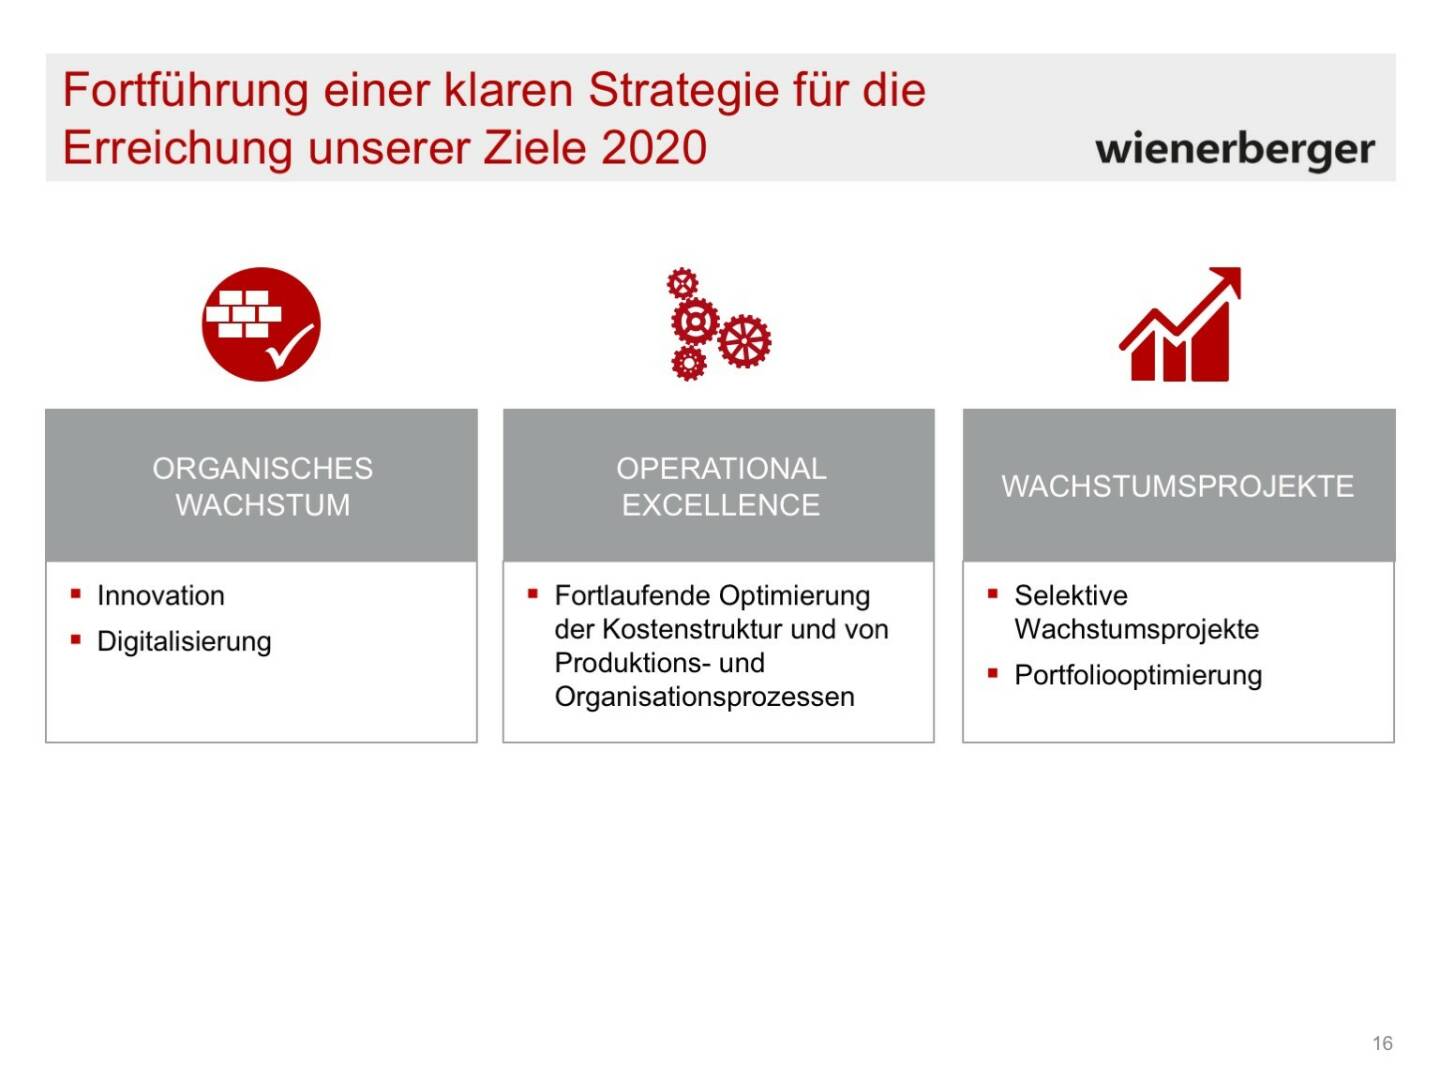 Wienerberger - Klare Strategie/Ziele 2020